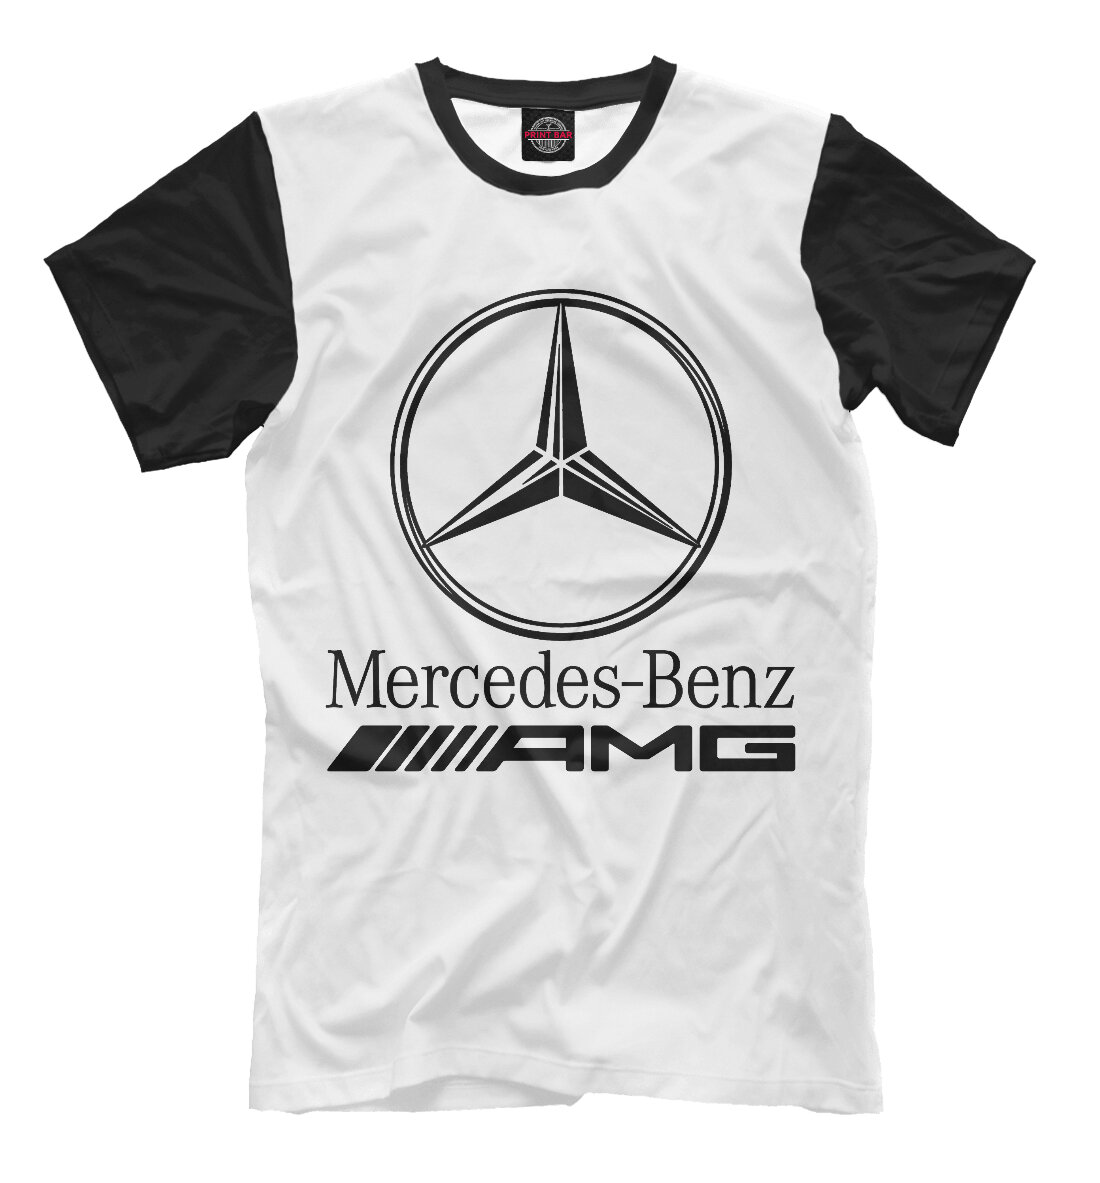 Футболка Mercedes-Benz. Логотип с надписью.